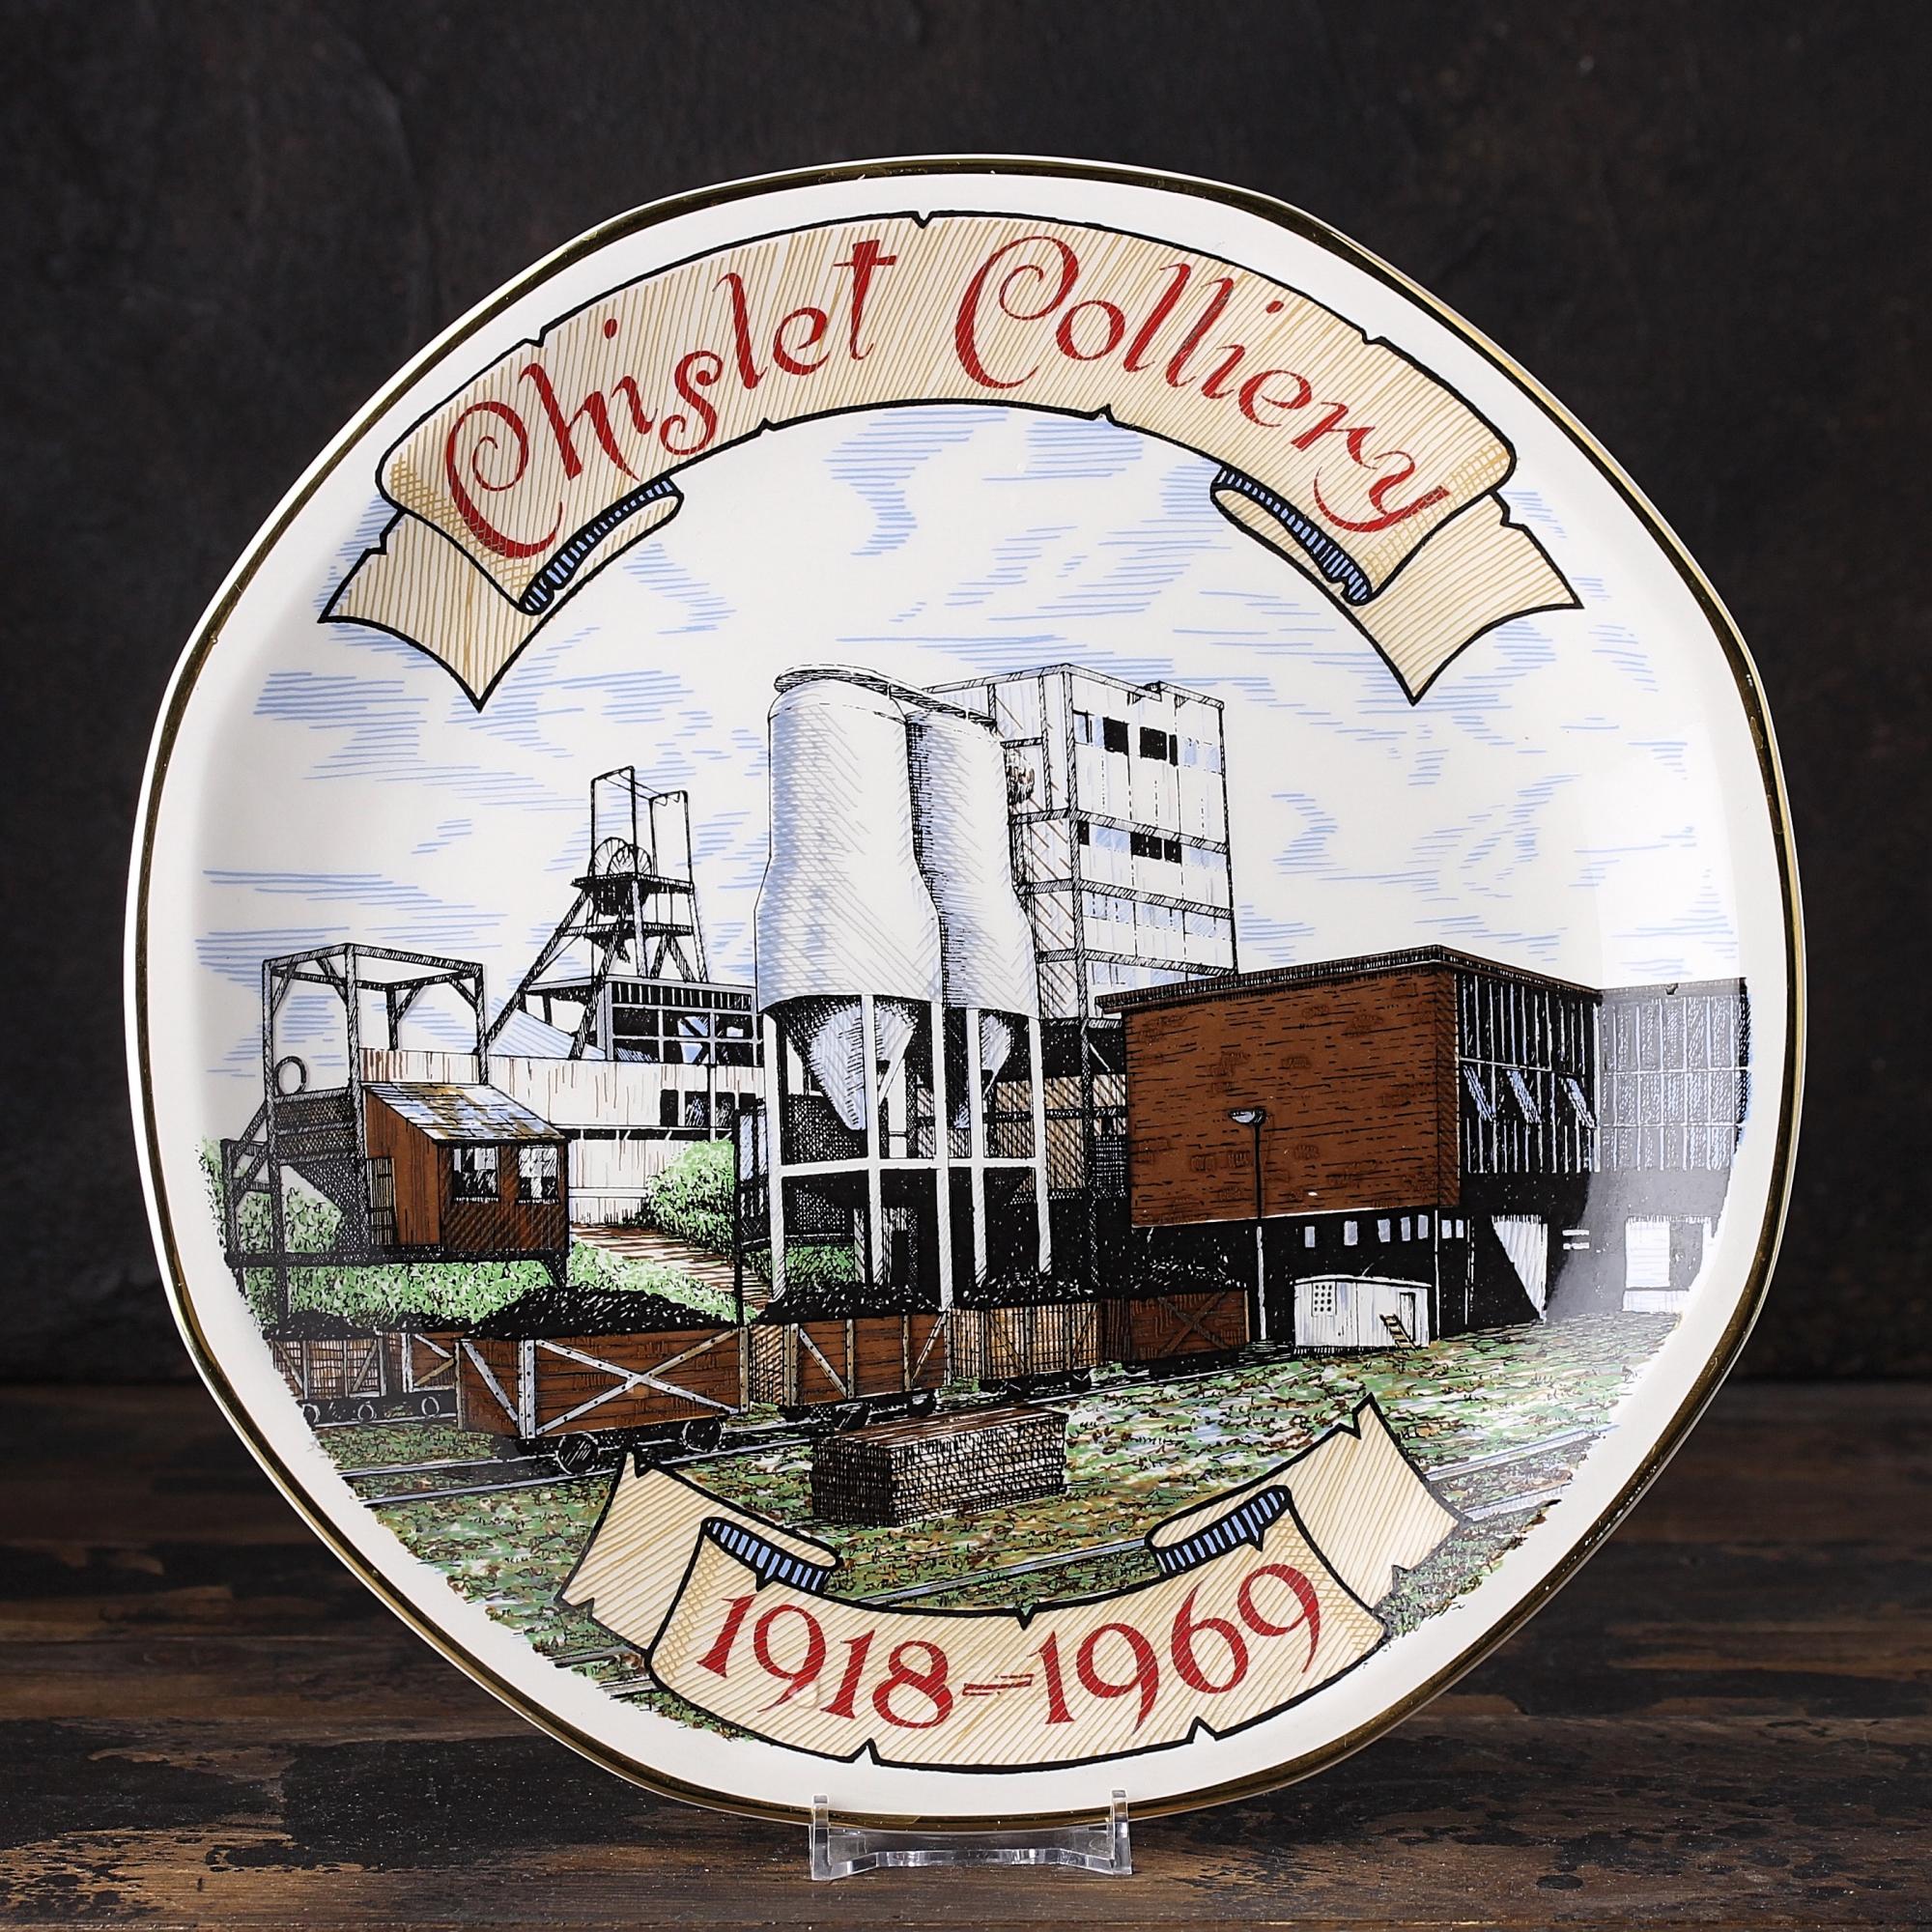 Тарелка винтажная декоративная настенная Англия Угольная шахта Chislet Colliery 1918-1969 Edwardian Fine China